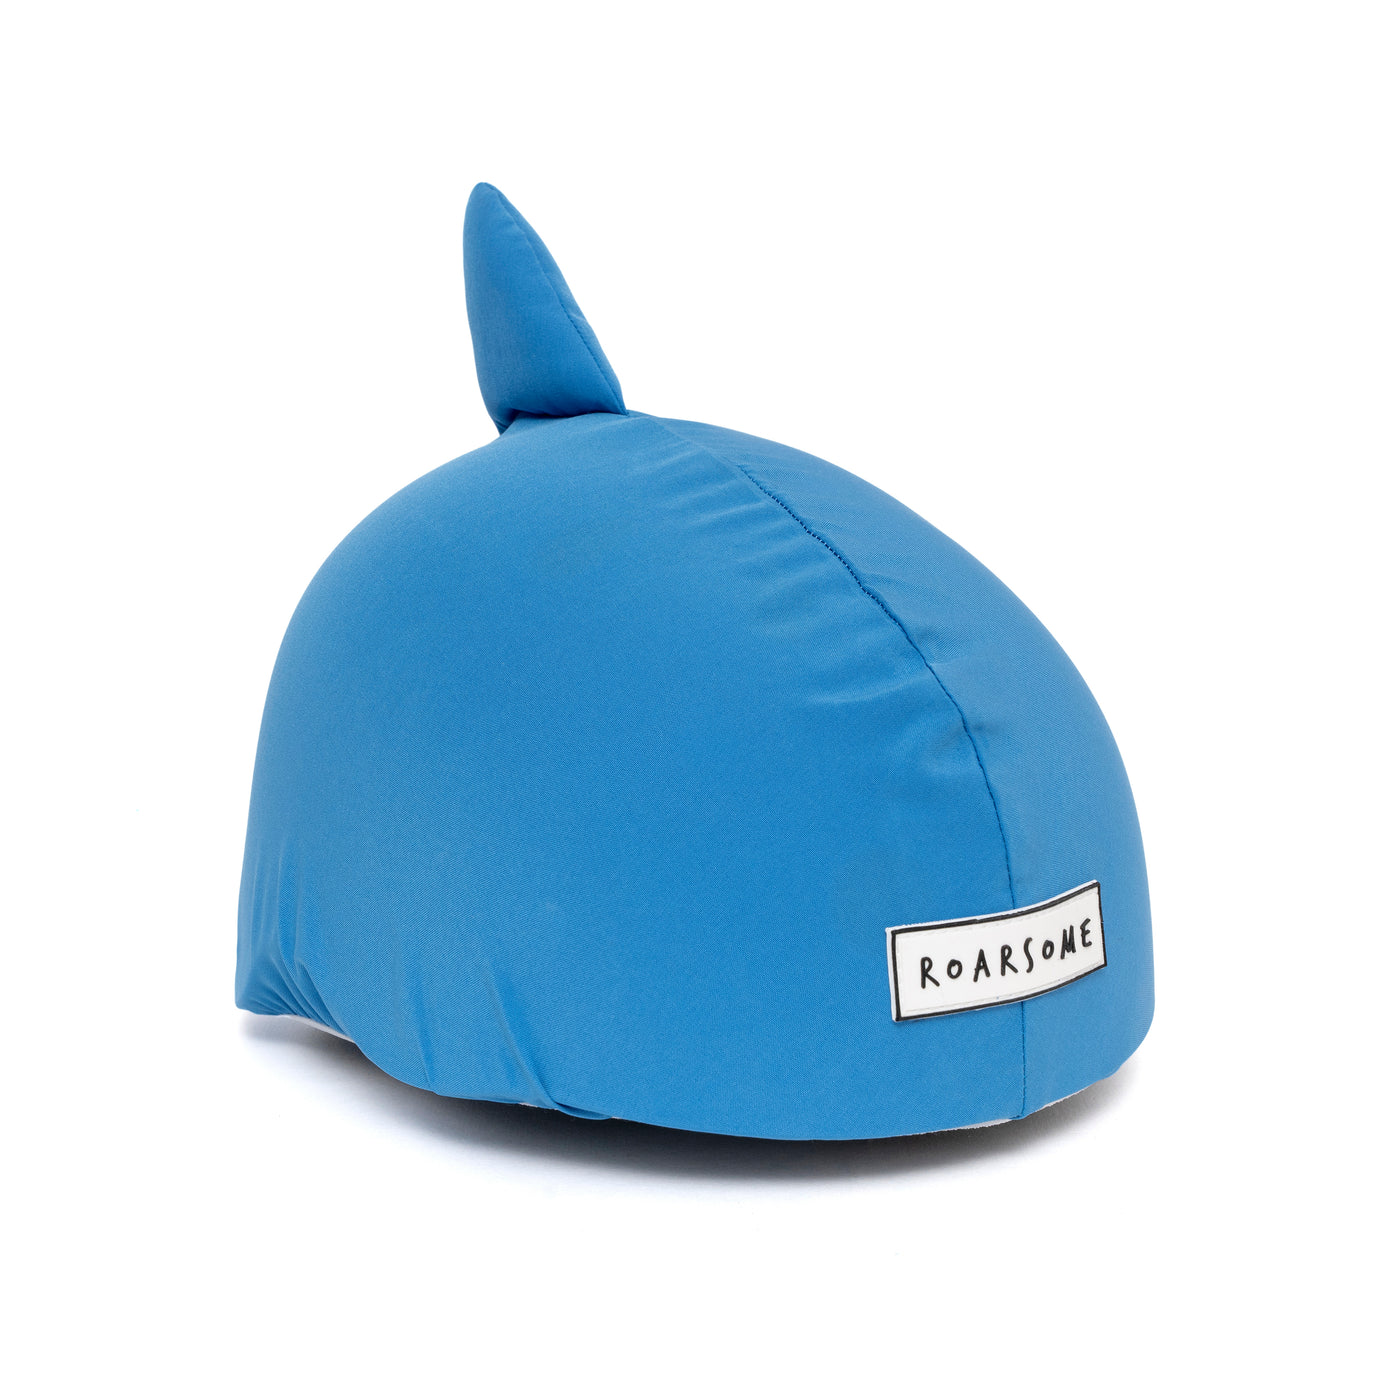 Roarsome Helmet Cover- REEF the shark